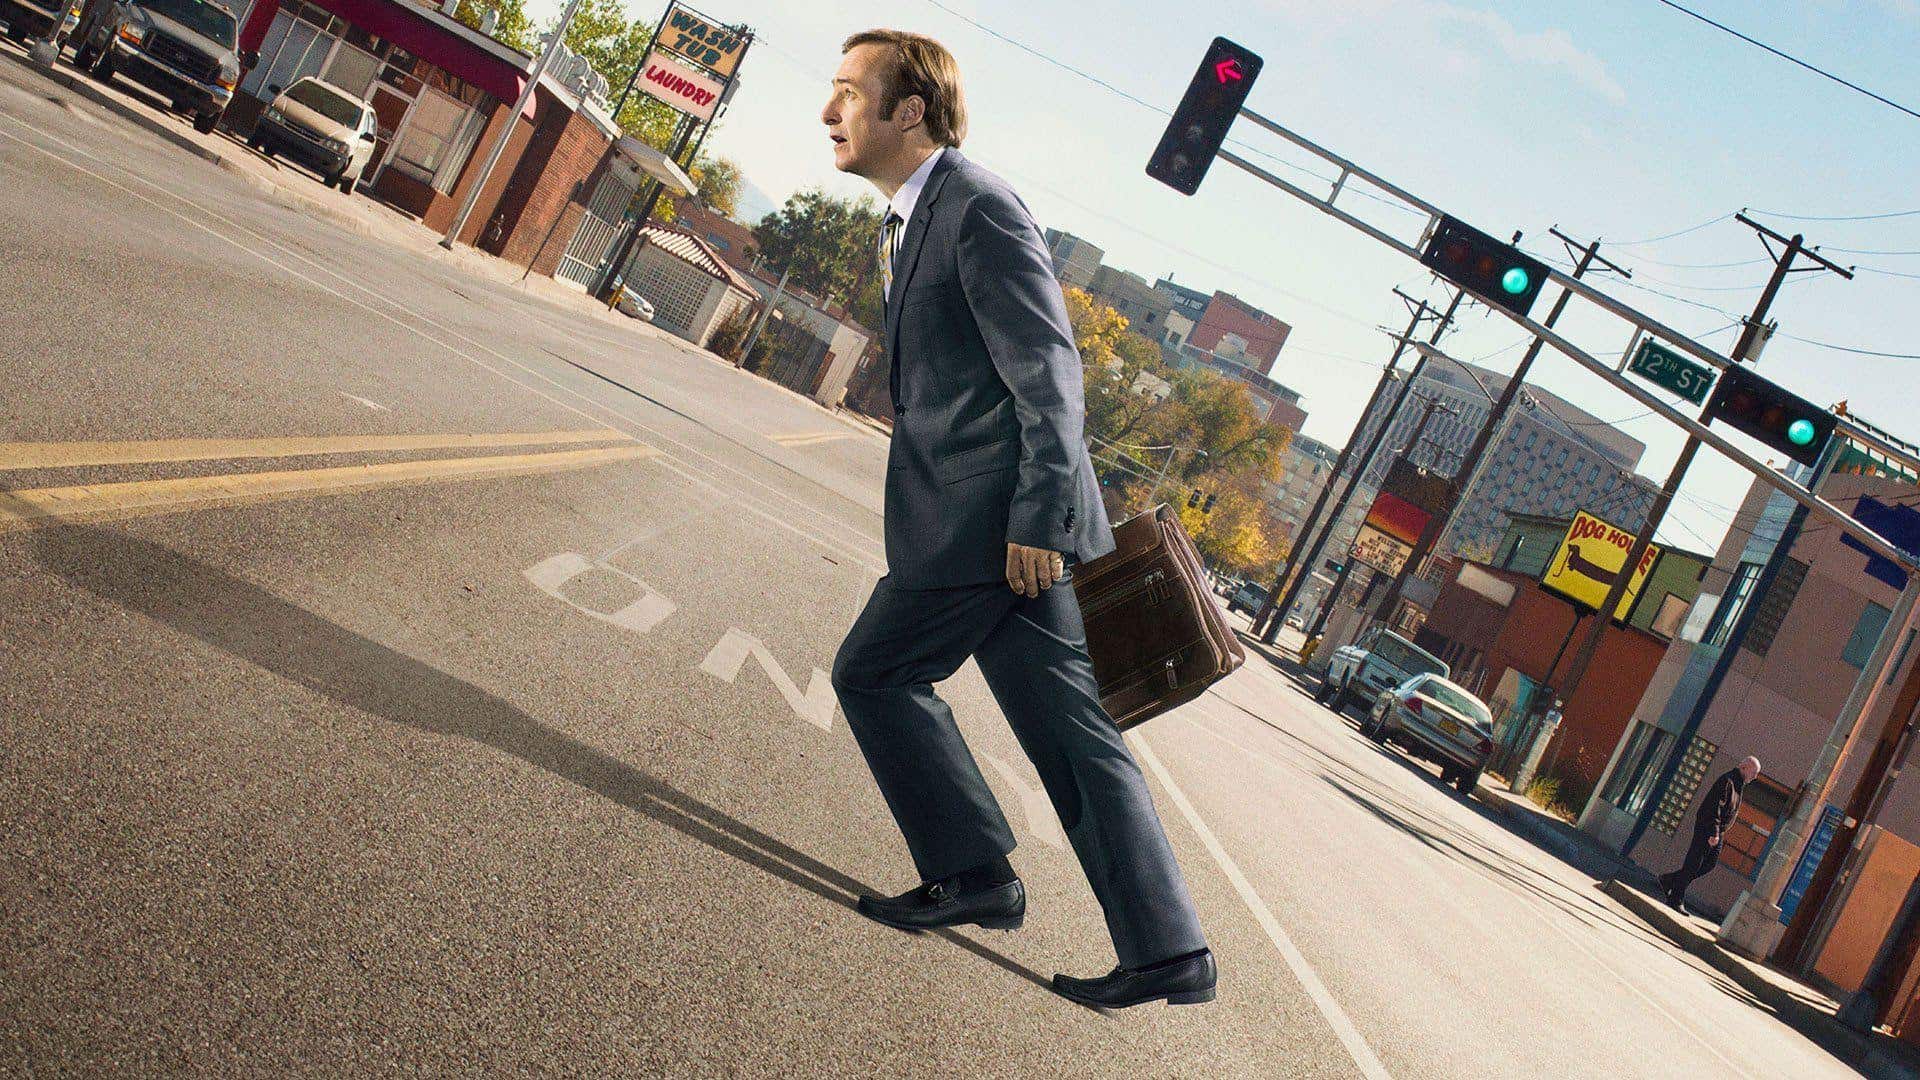 Saul Goodman walking